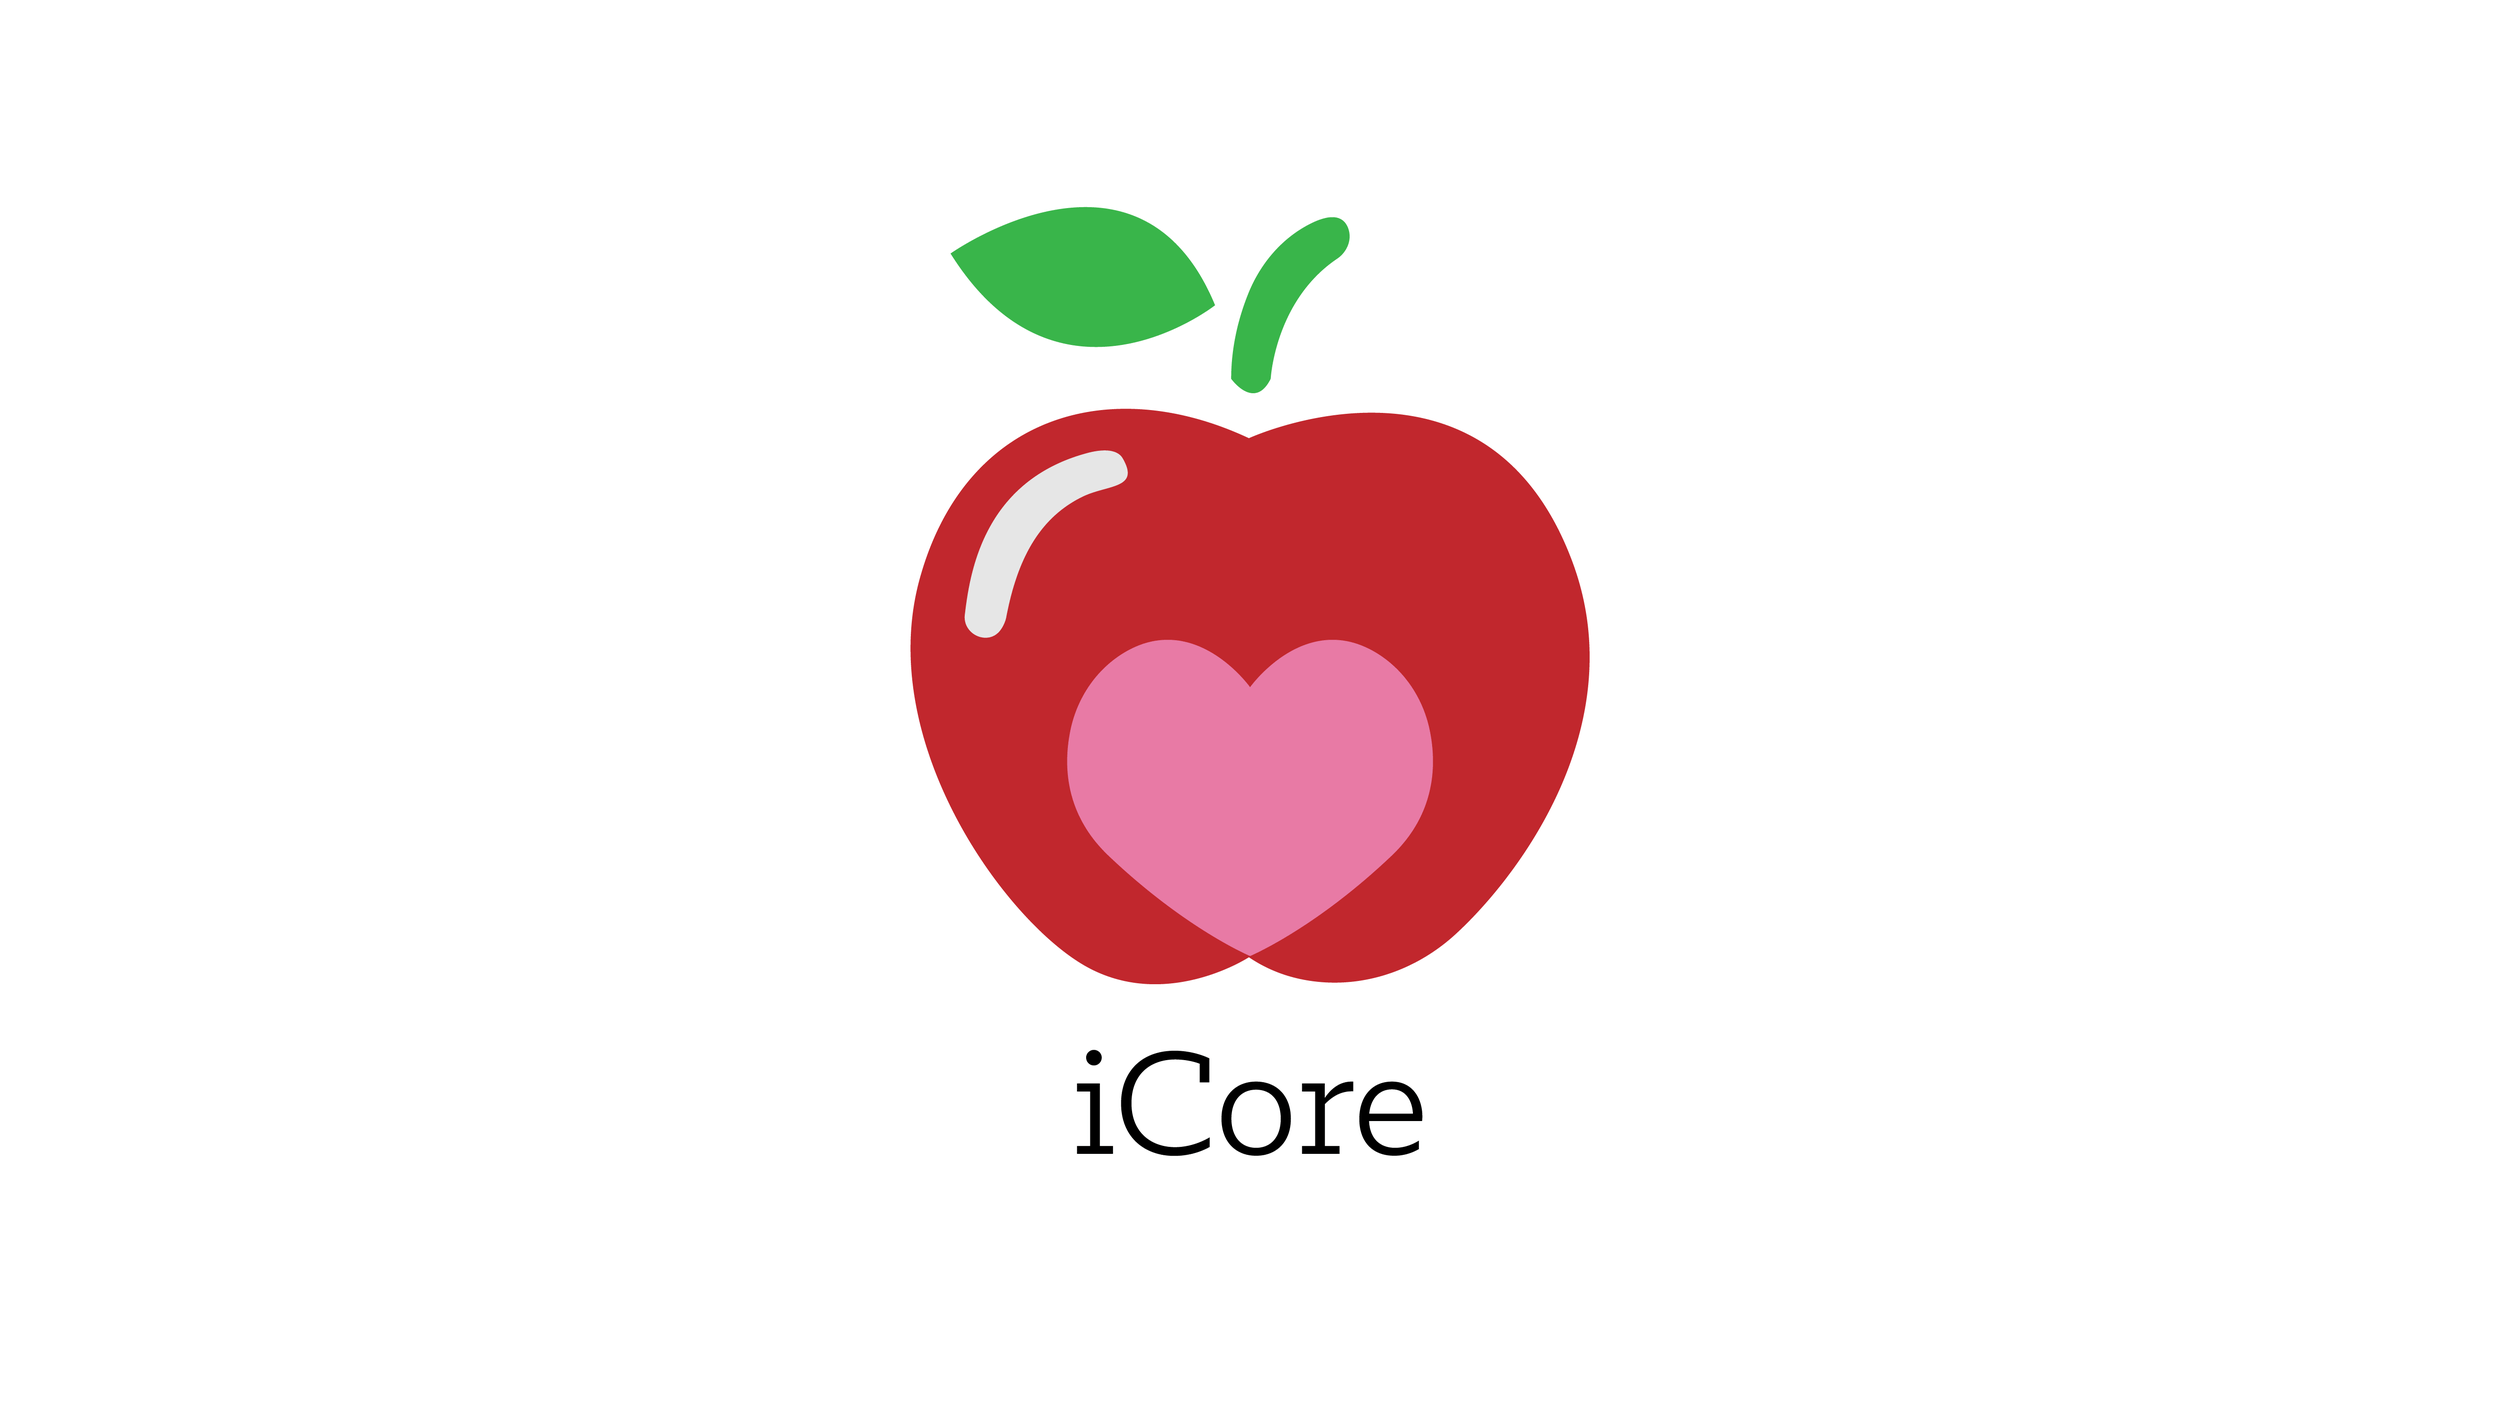 iCore Logo - iCore